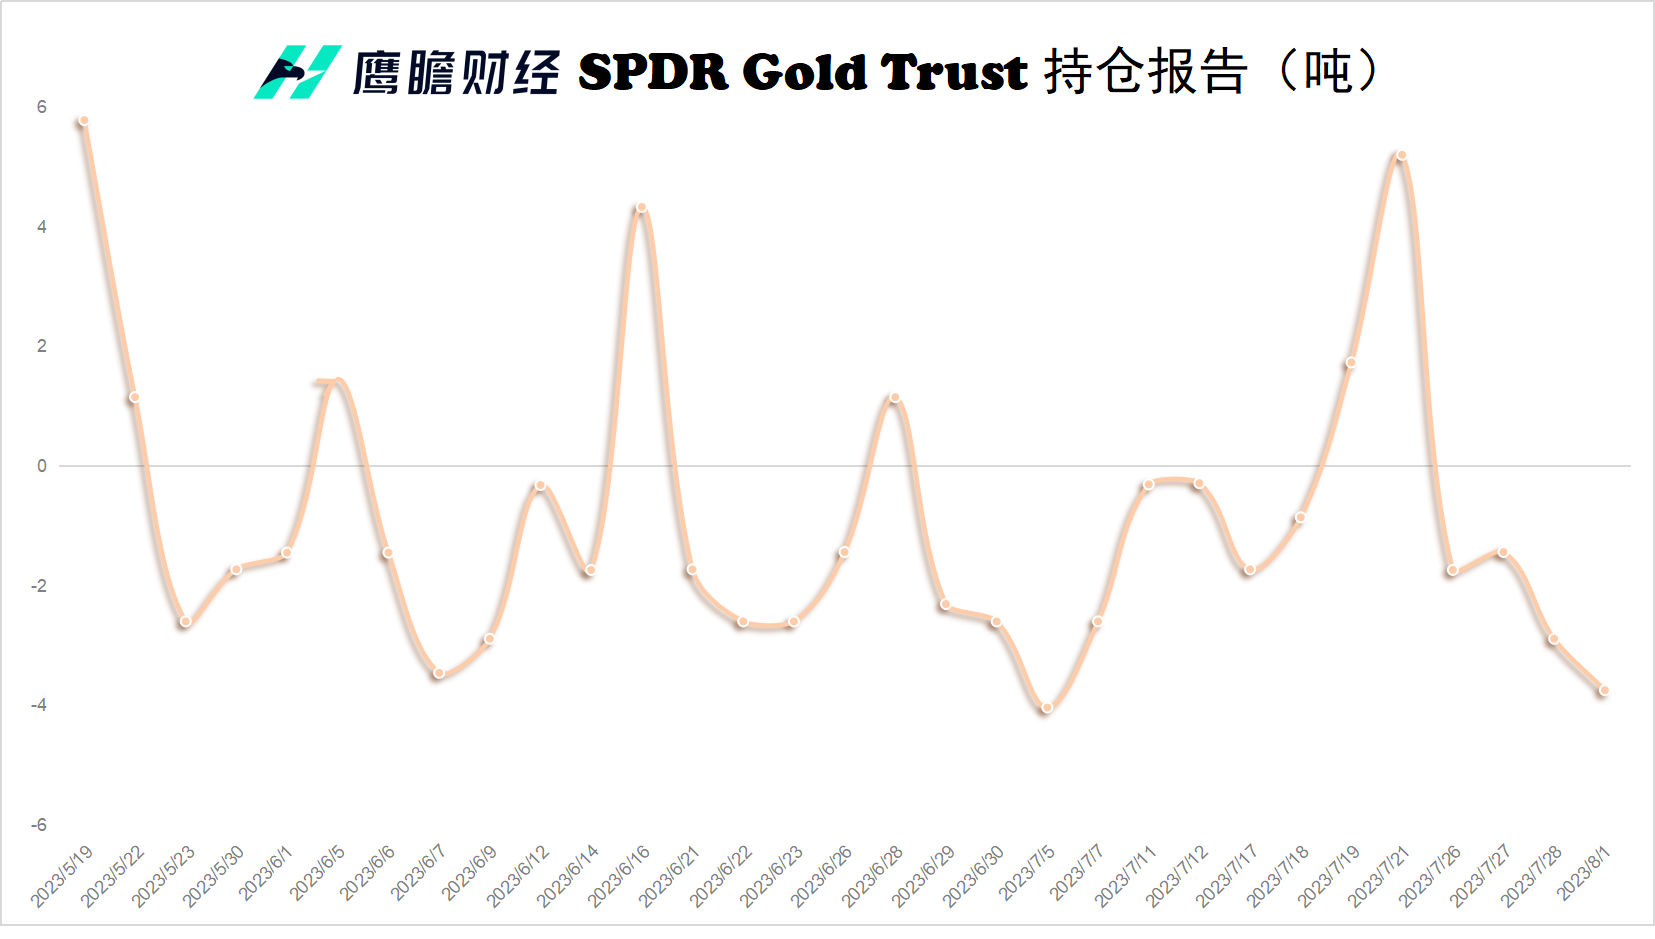 中国黄金现在黄金价格多少钱一克（2023年2月6日） - 黄金网